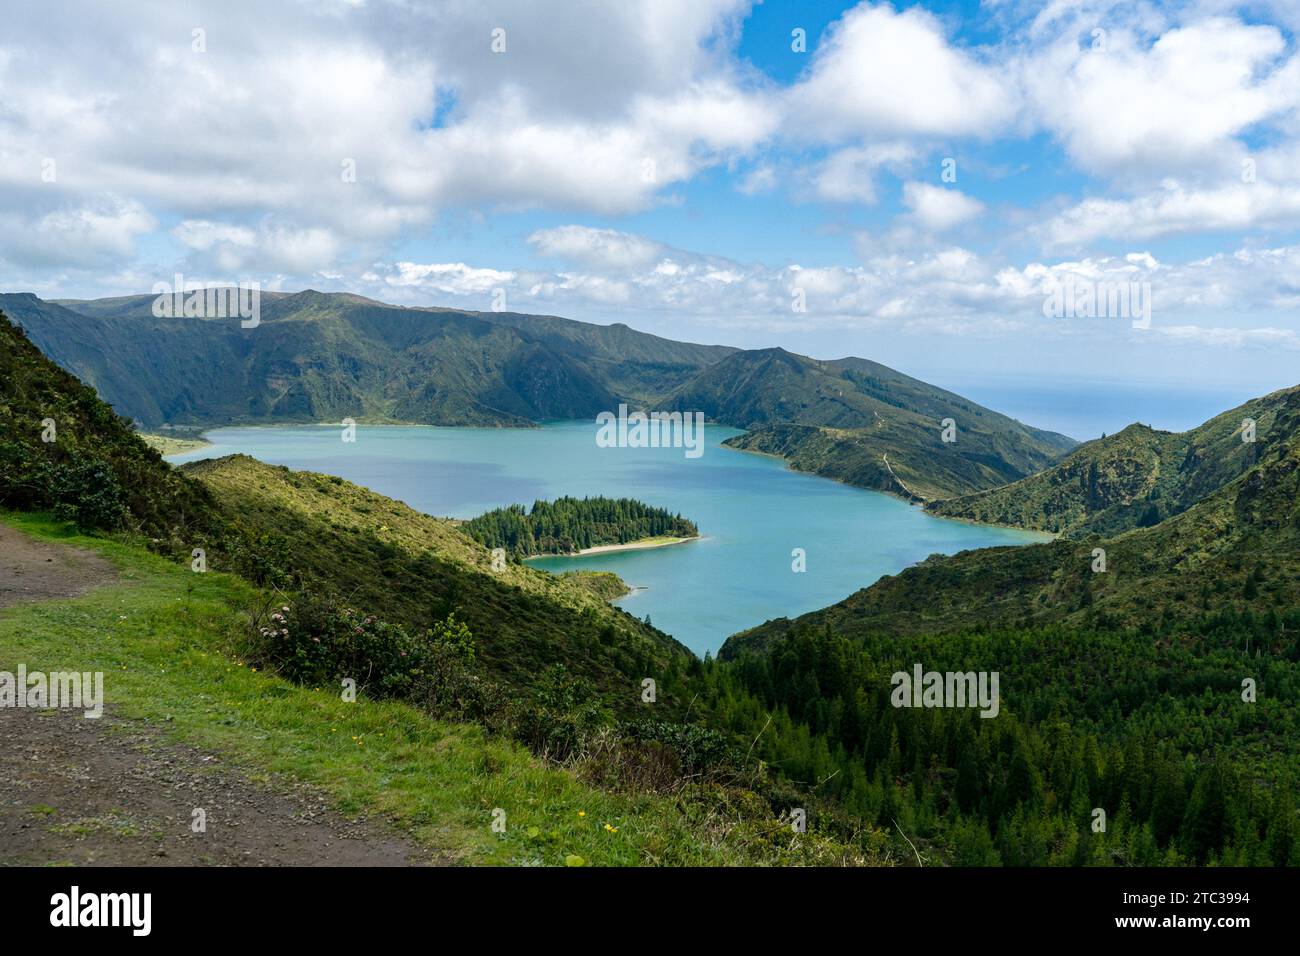 La lagune des sept villes des Açores est un spectacle de sérénité et de beauté, où les eaux bleues se mêlent au vert luxuriant des pentes volcaniques. Banque D'Images